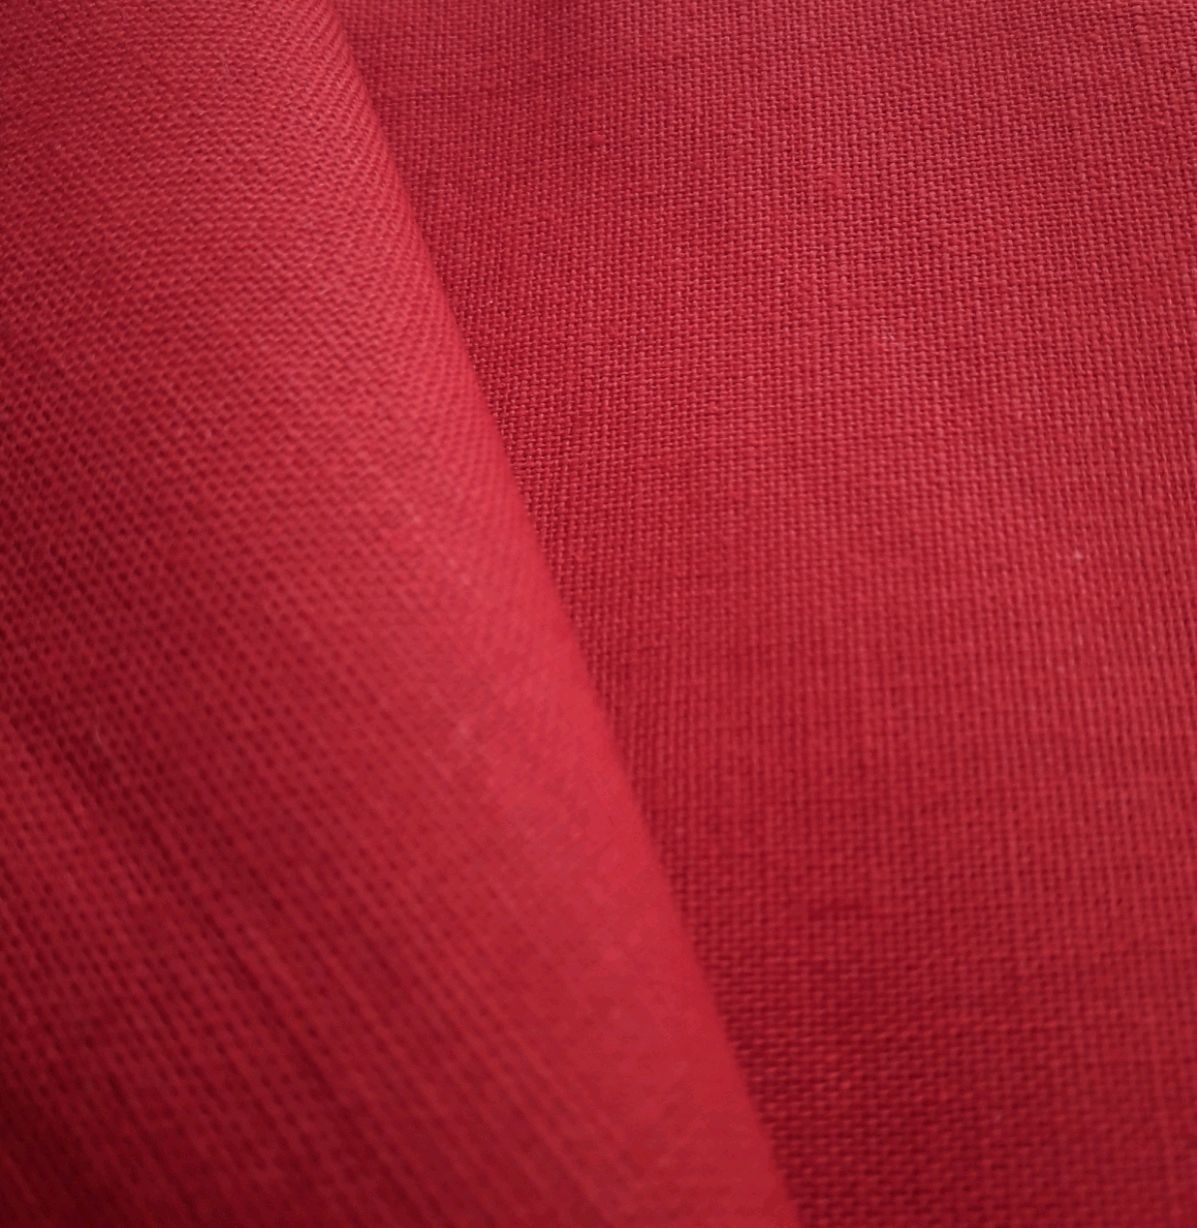 Хлопок красный купить. Полульняная ткань. Красный лен ткань. Красная ткань штора. Обои красные под ткань 375155.